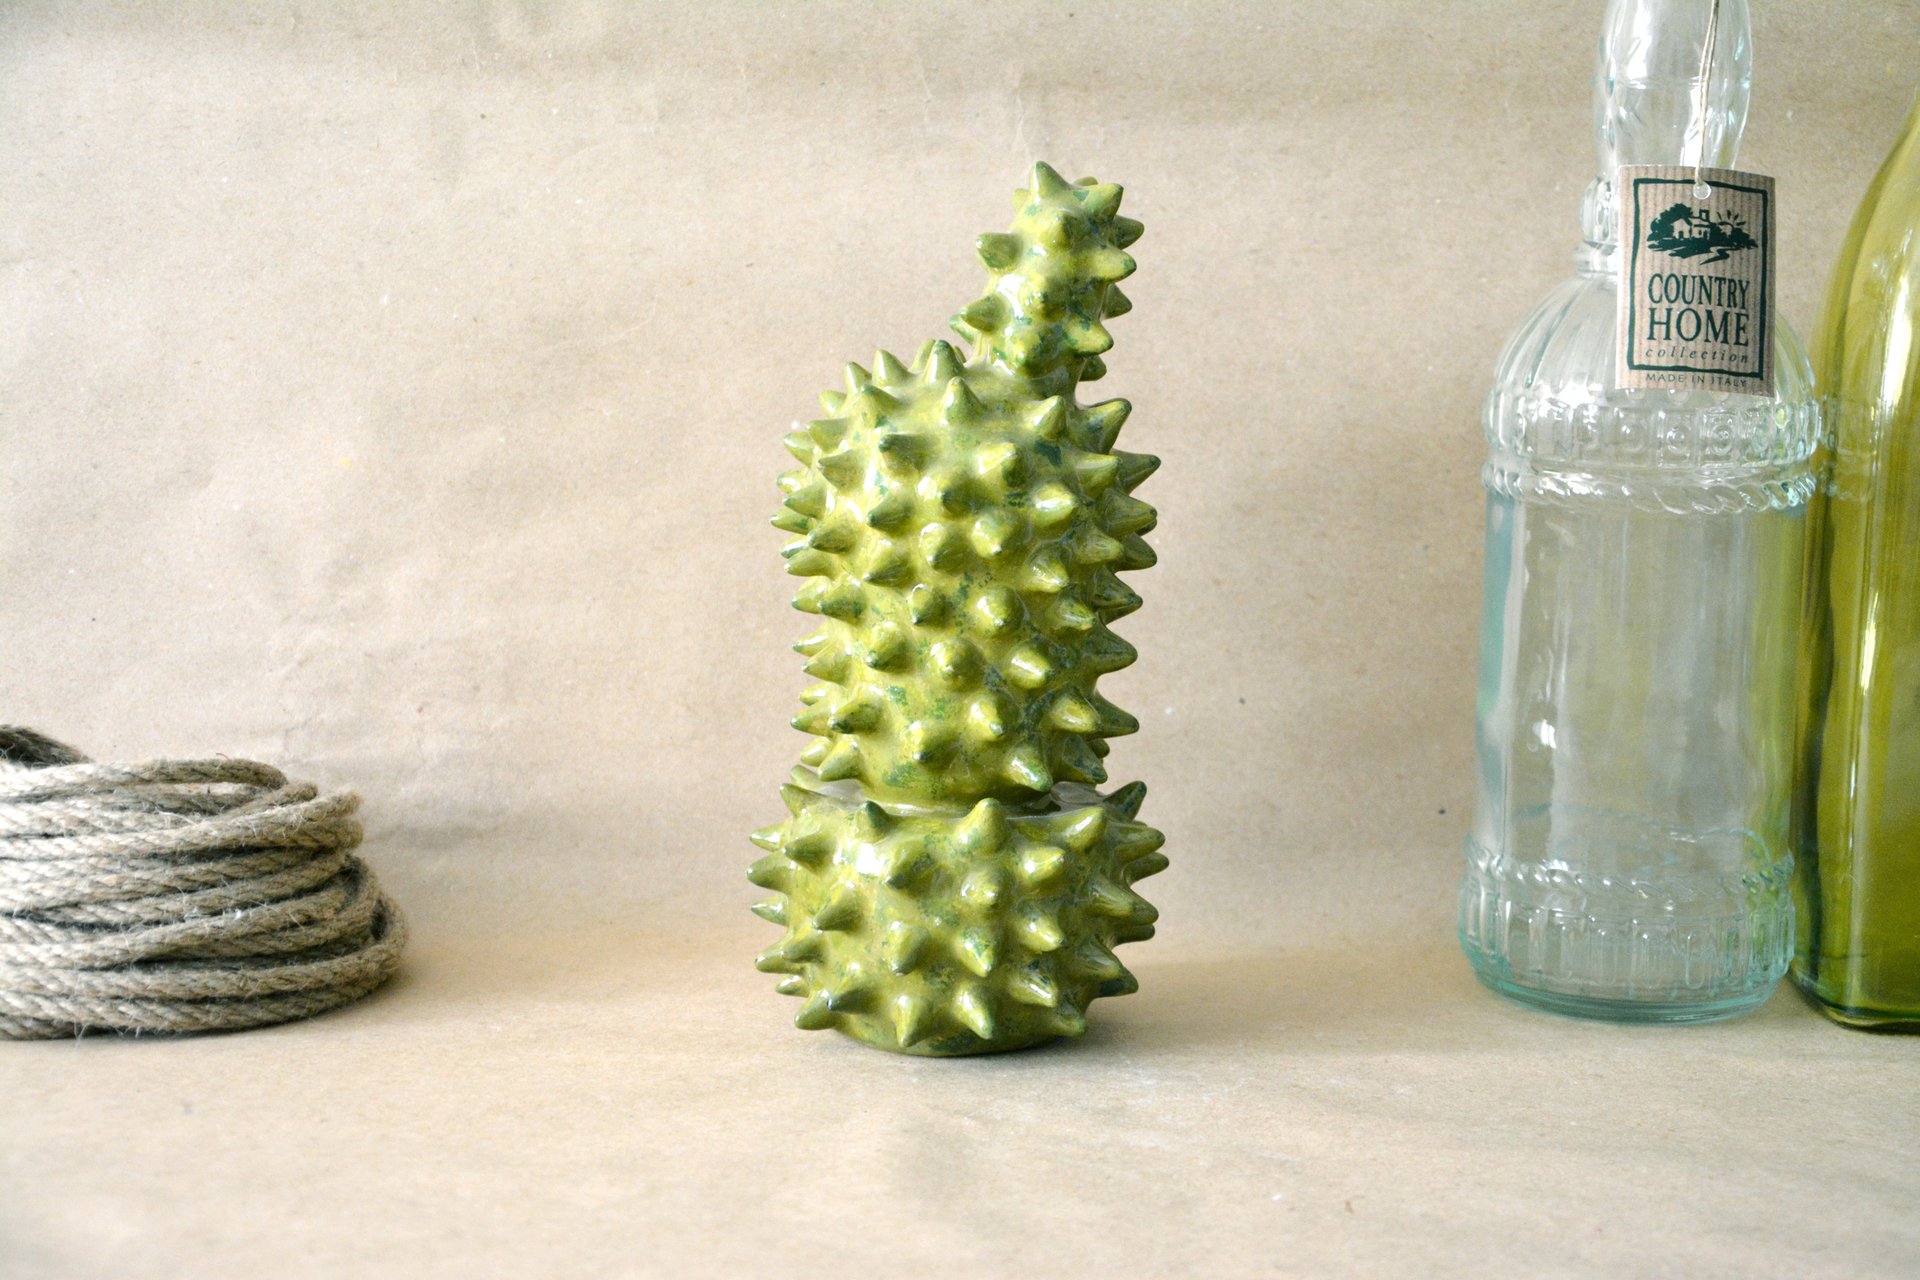 Decorative cactus Echinopsis - Cactus ceramic, height - 21 cm, photo 3 of 5.